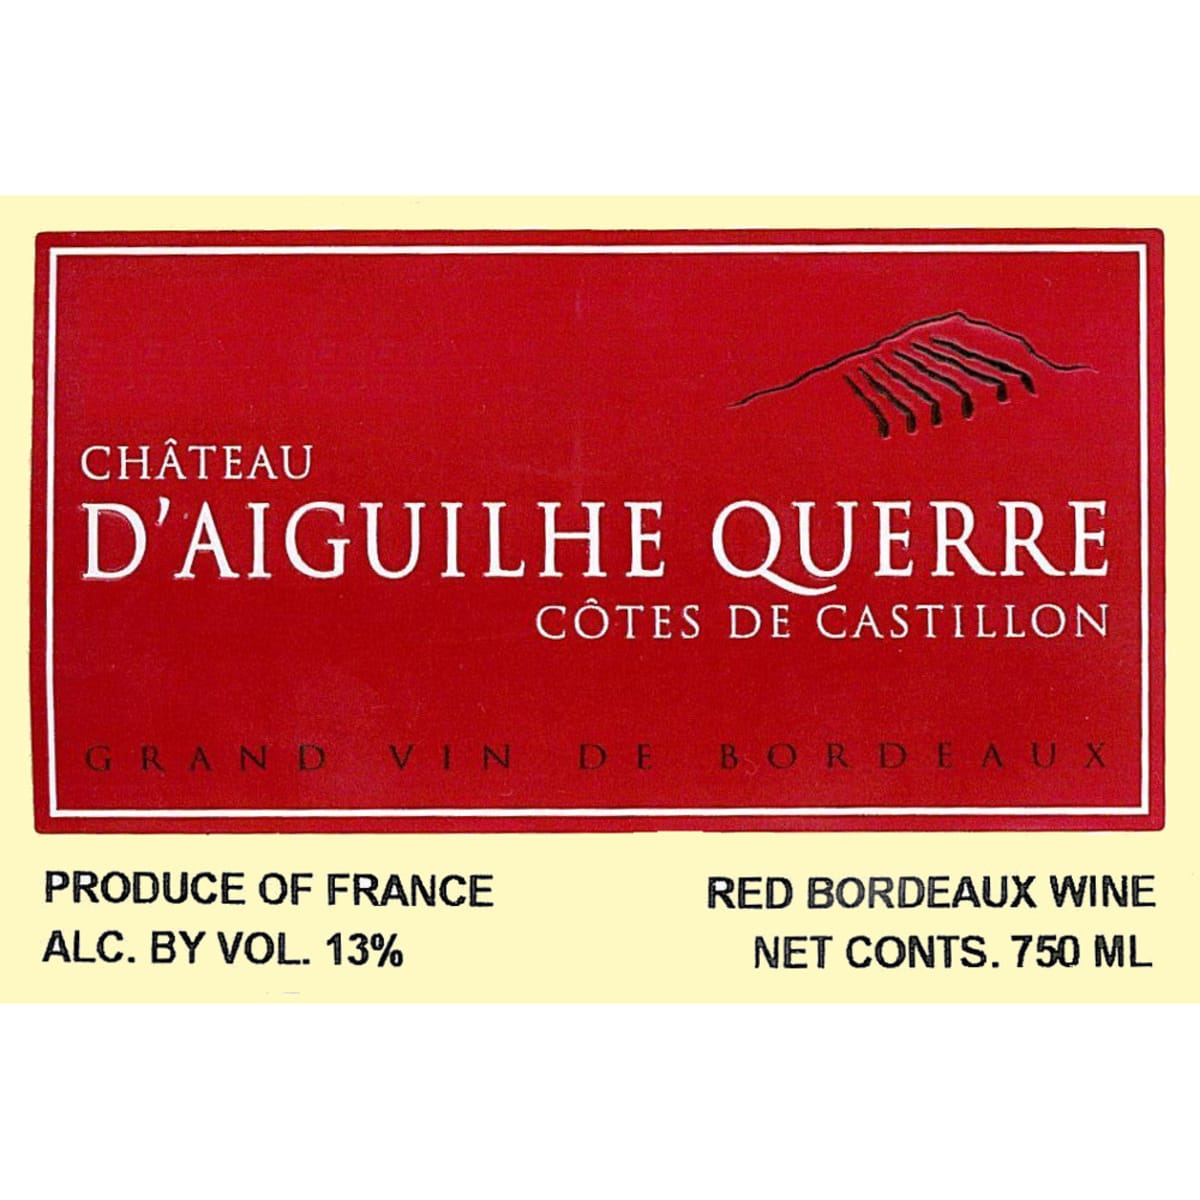 Chateau d'Aiguilhe Querre Cotes de Castillon 2005 Front Label